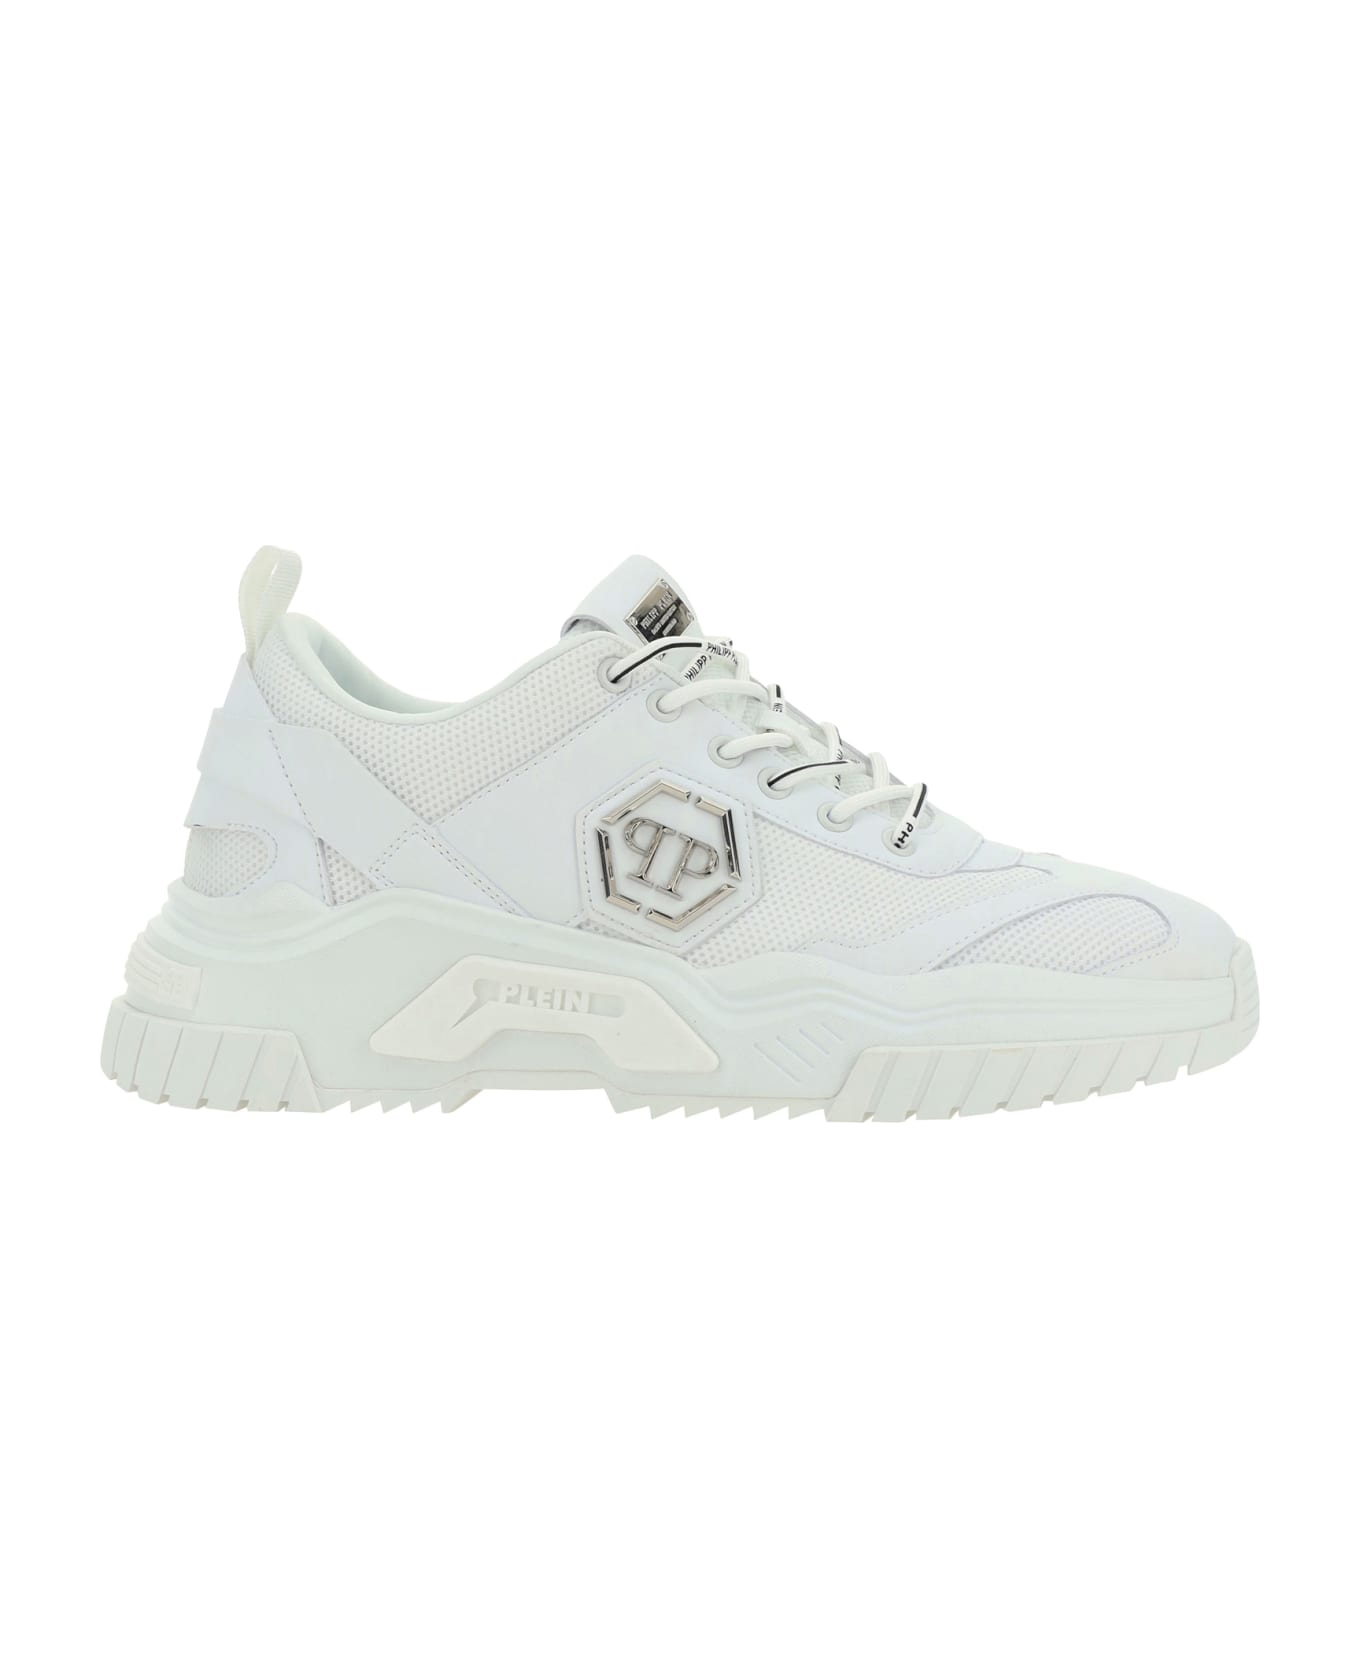 Philipp Plein Predator Sneakers - White / white